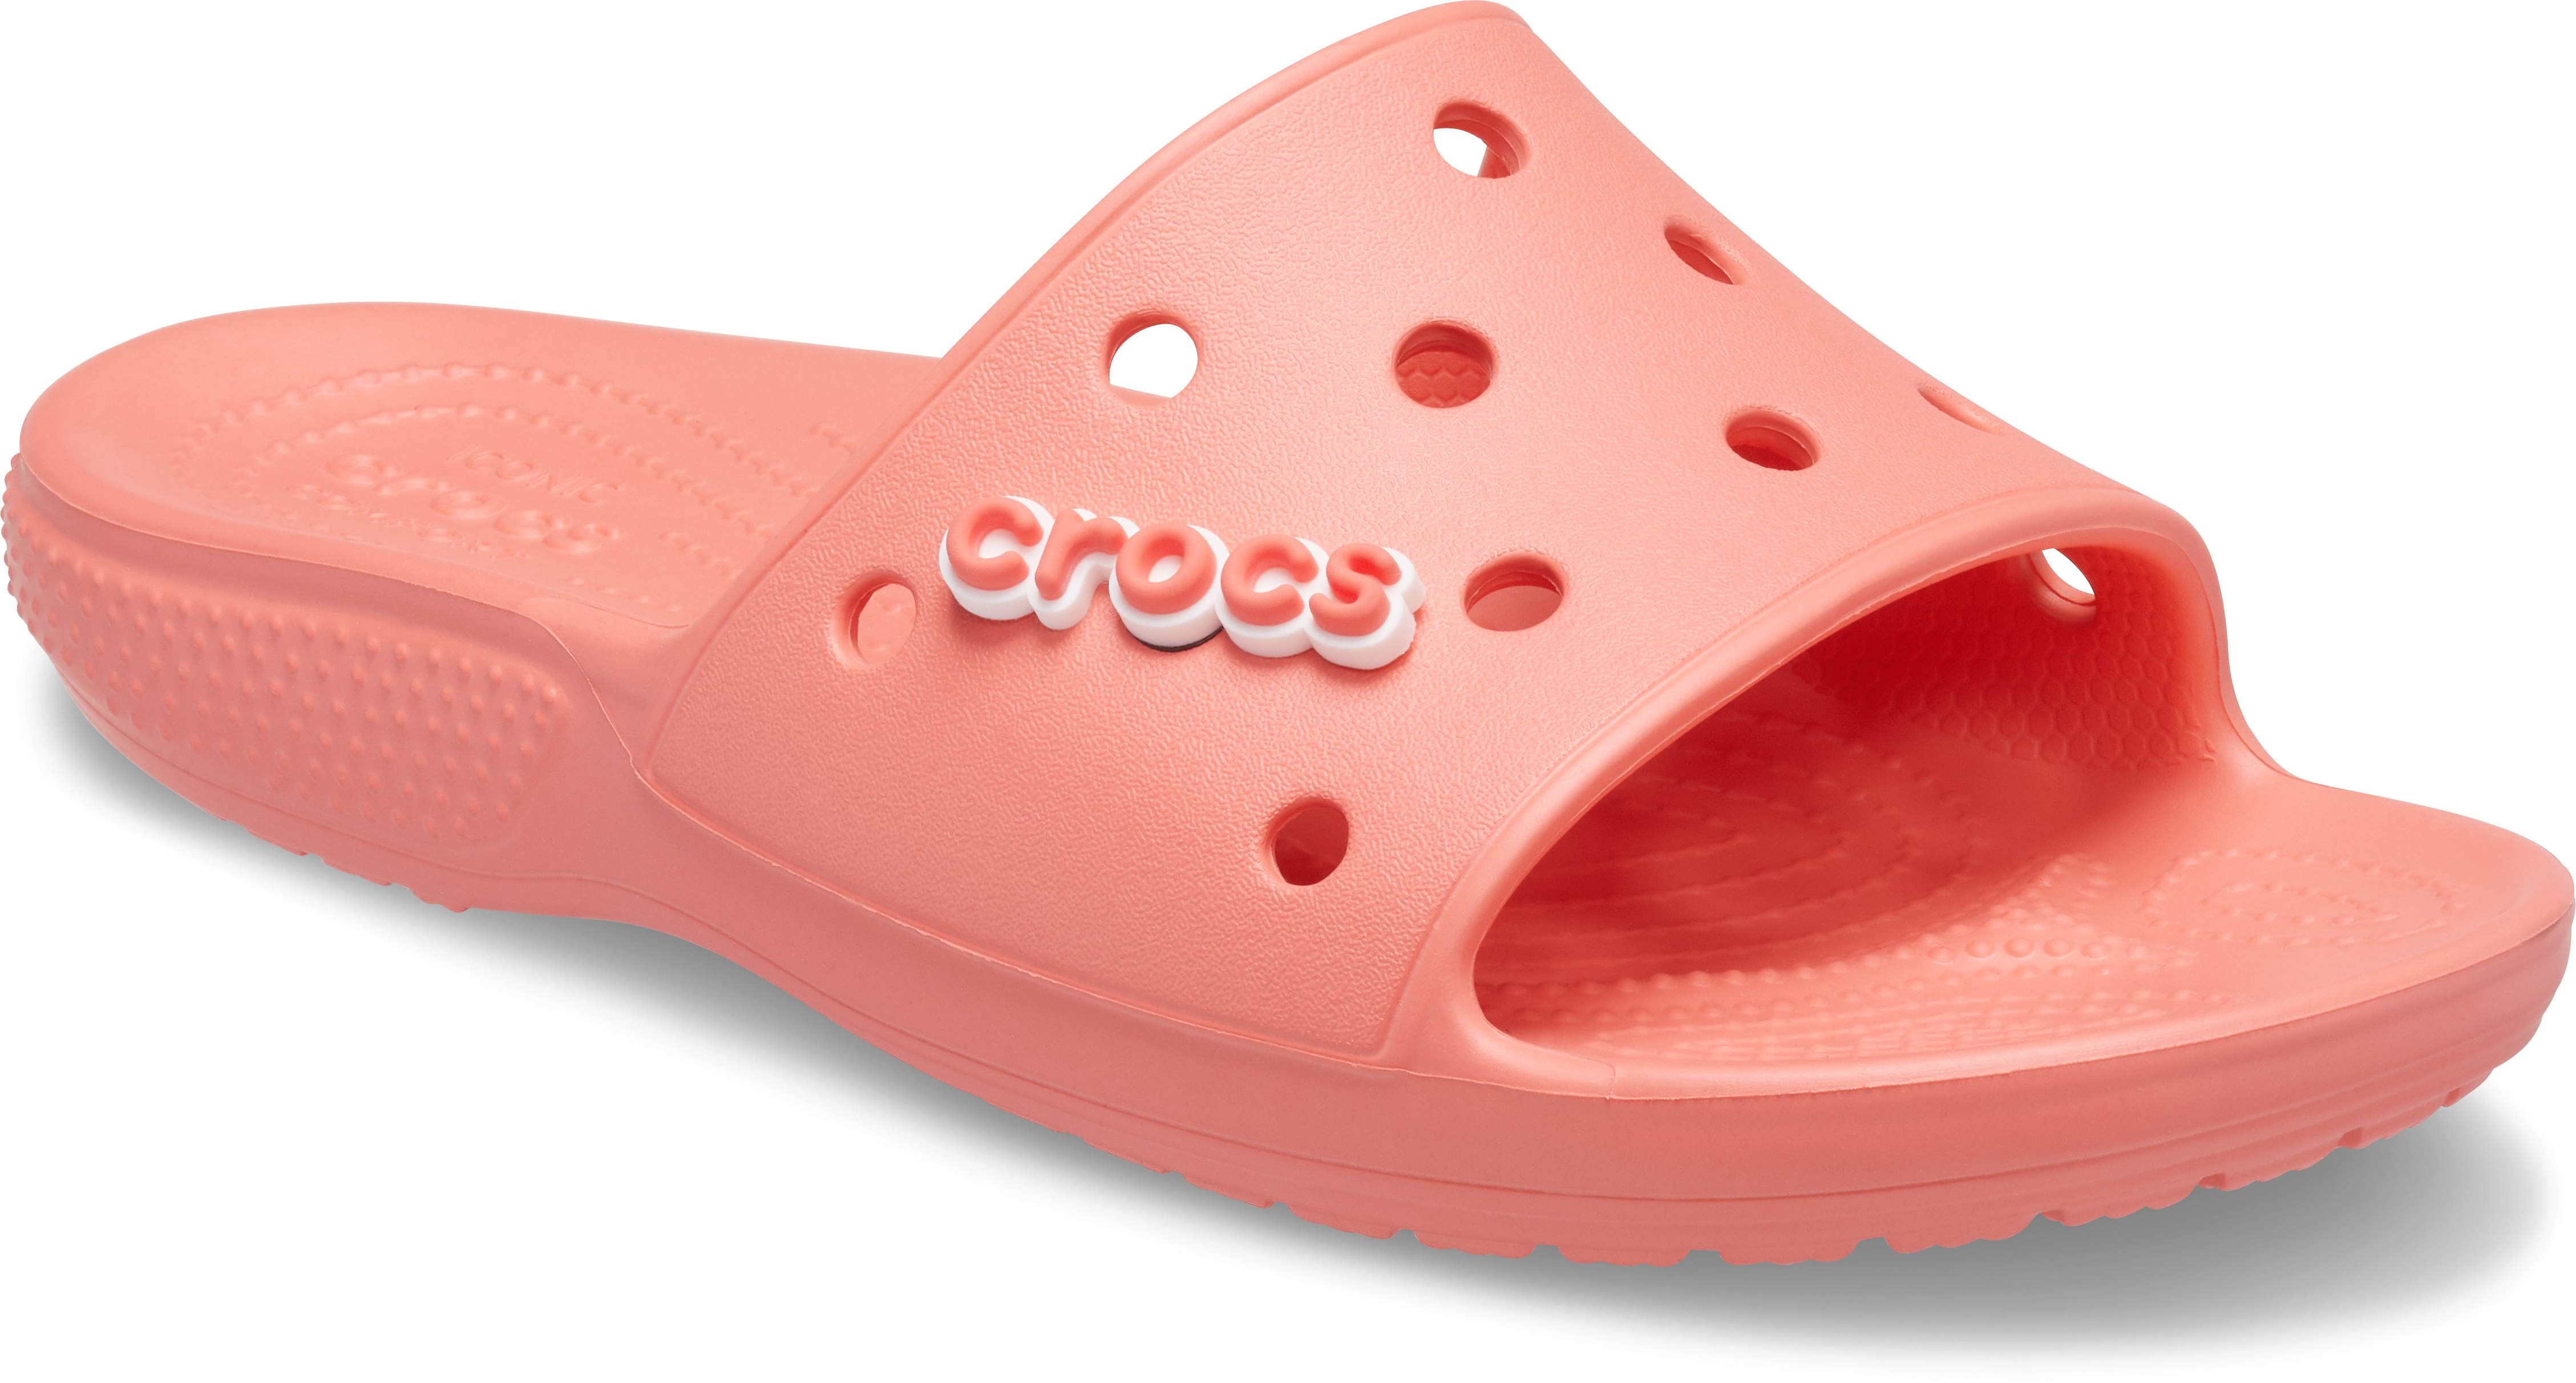 iconic crocs comfort slides